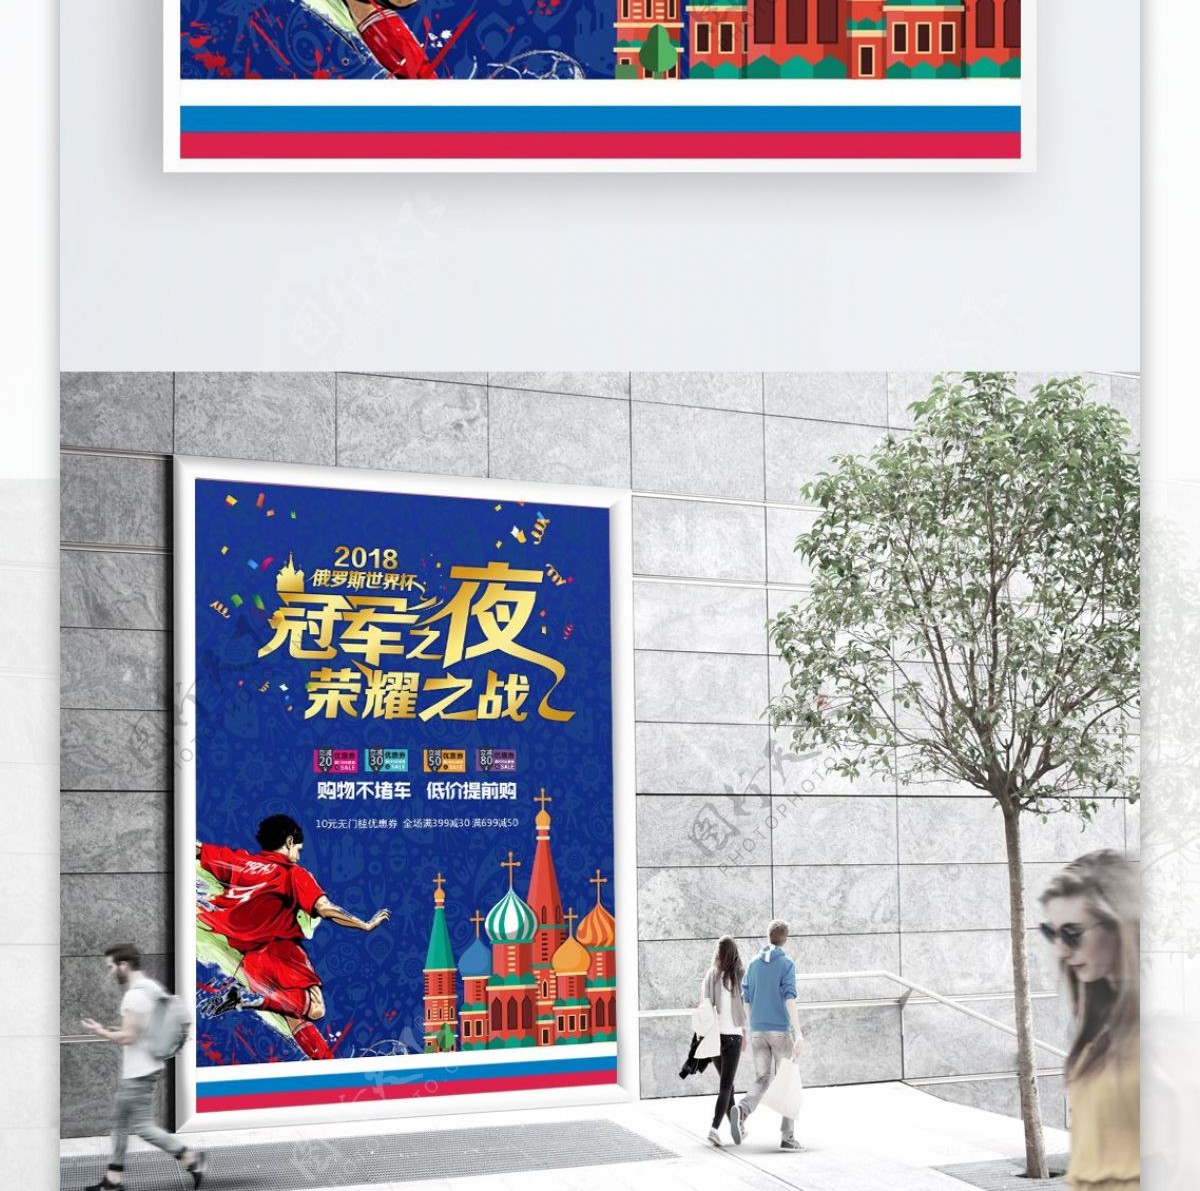 世界杯海报设计cdr模板